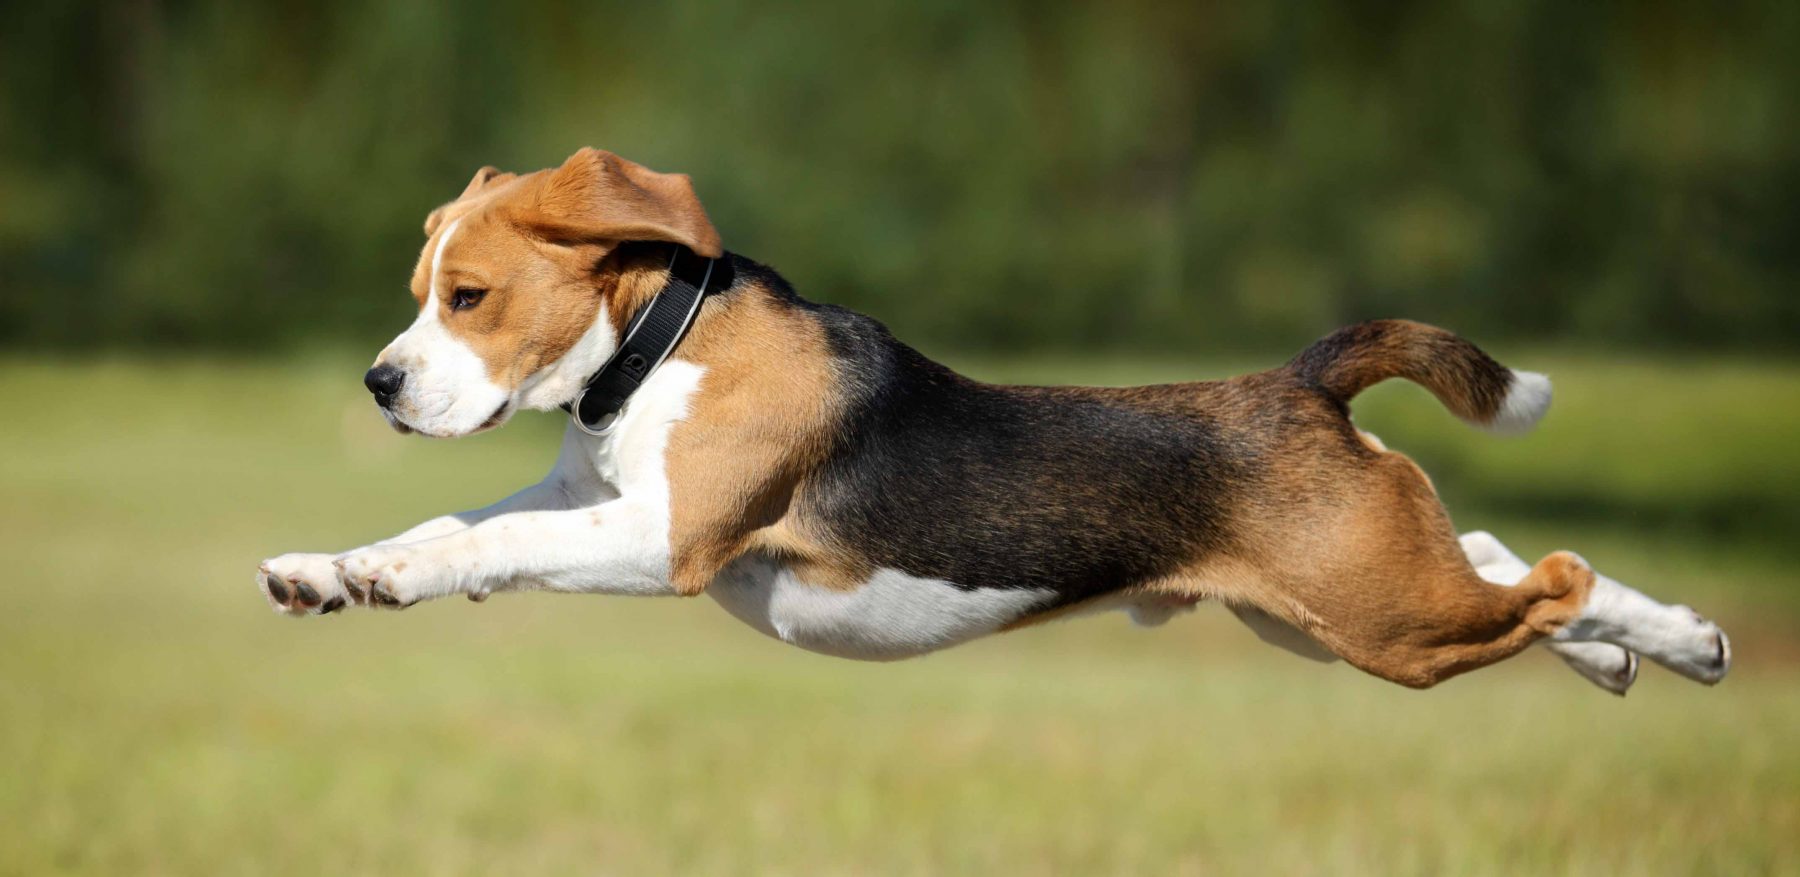 dog jumping forward